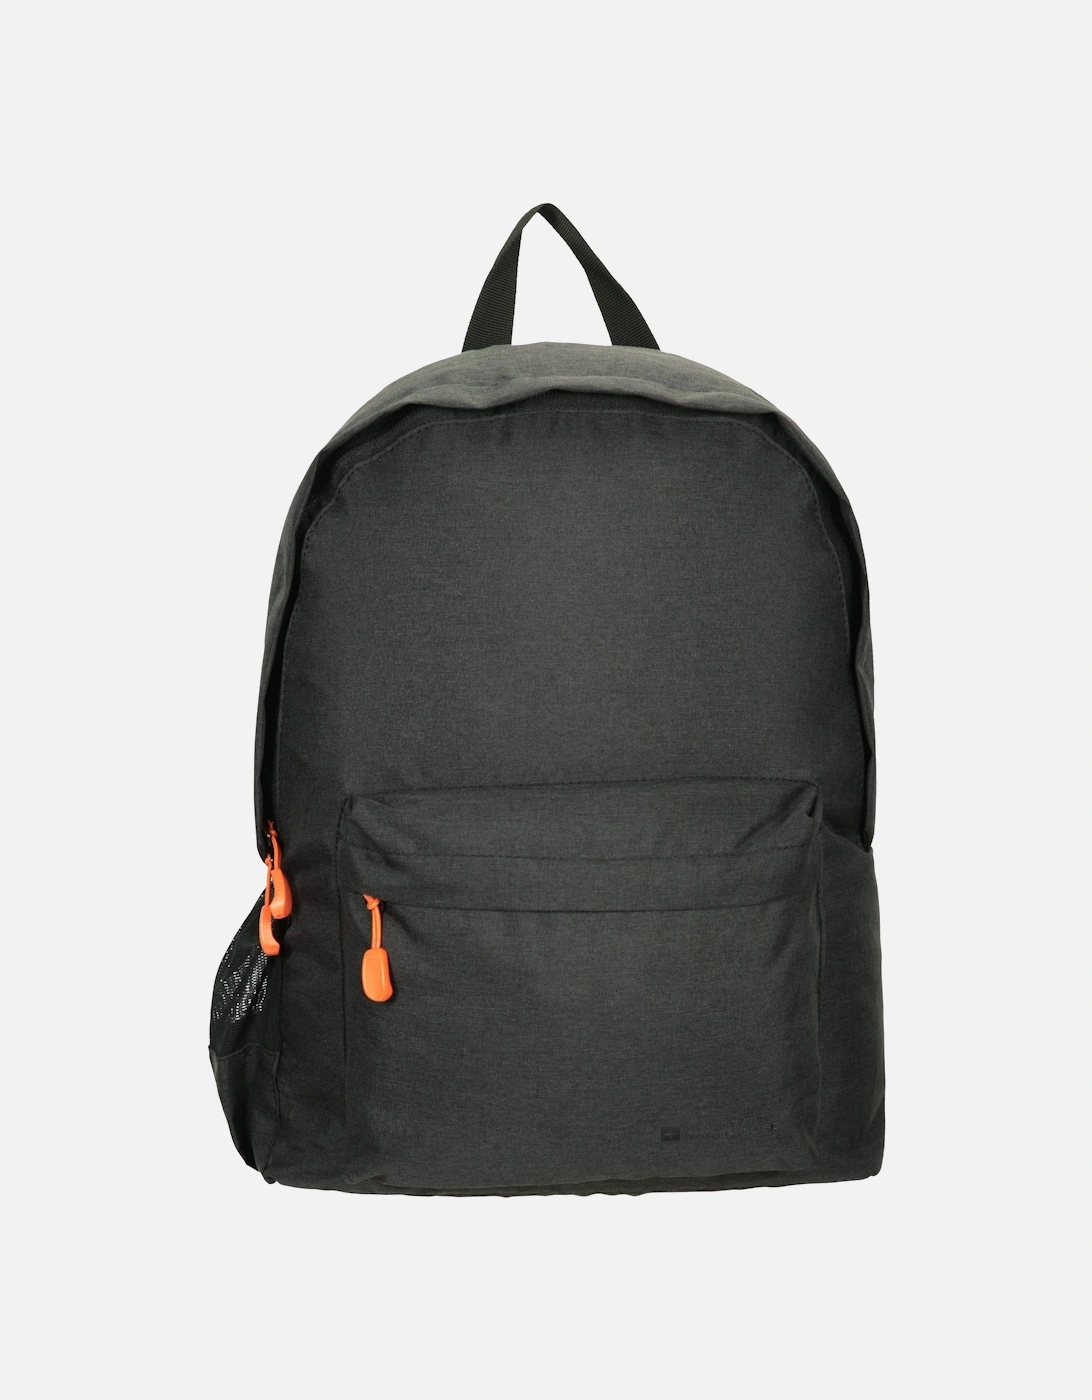 Emprise 15L Backpack, 6 of 5